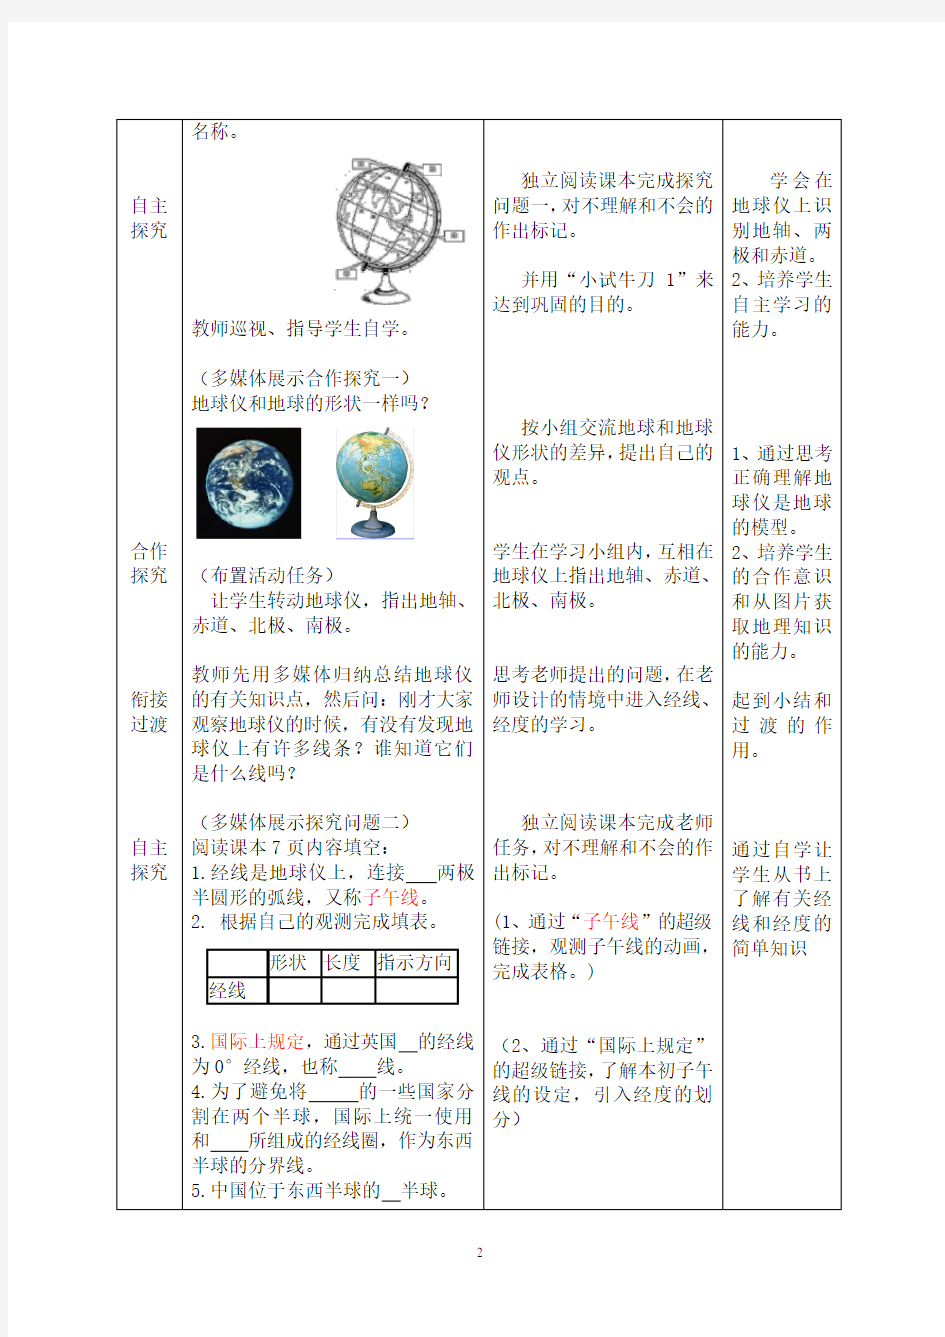 地理七年级上册第一章第二节《地球仪和经纬网》教案